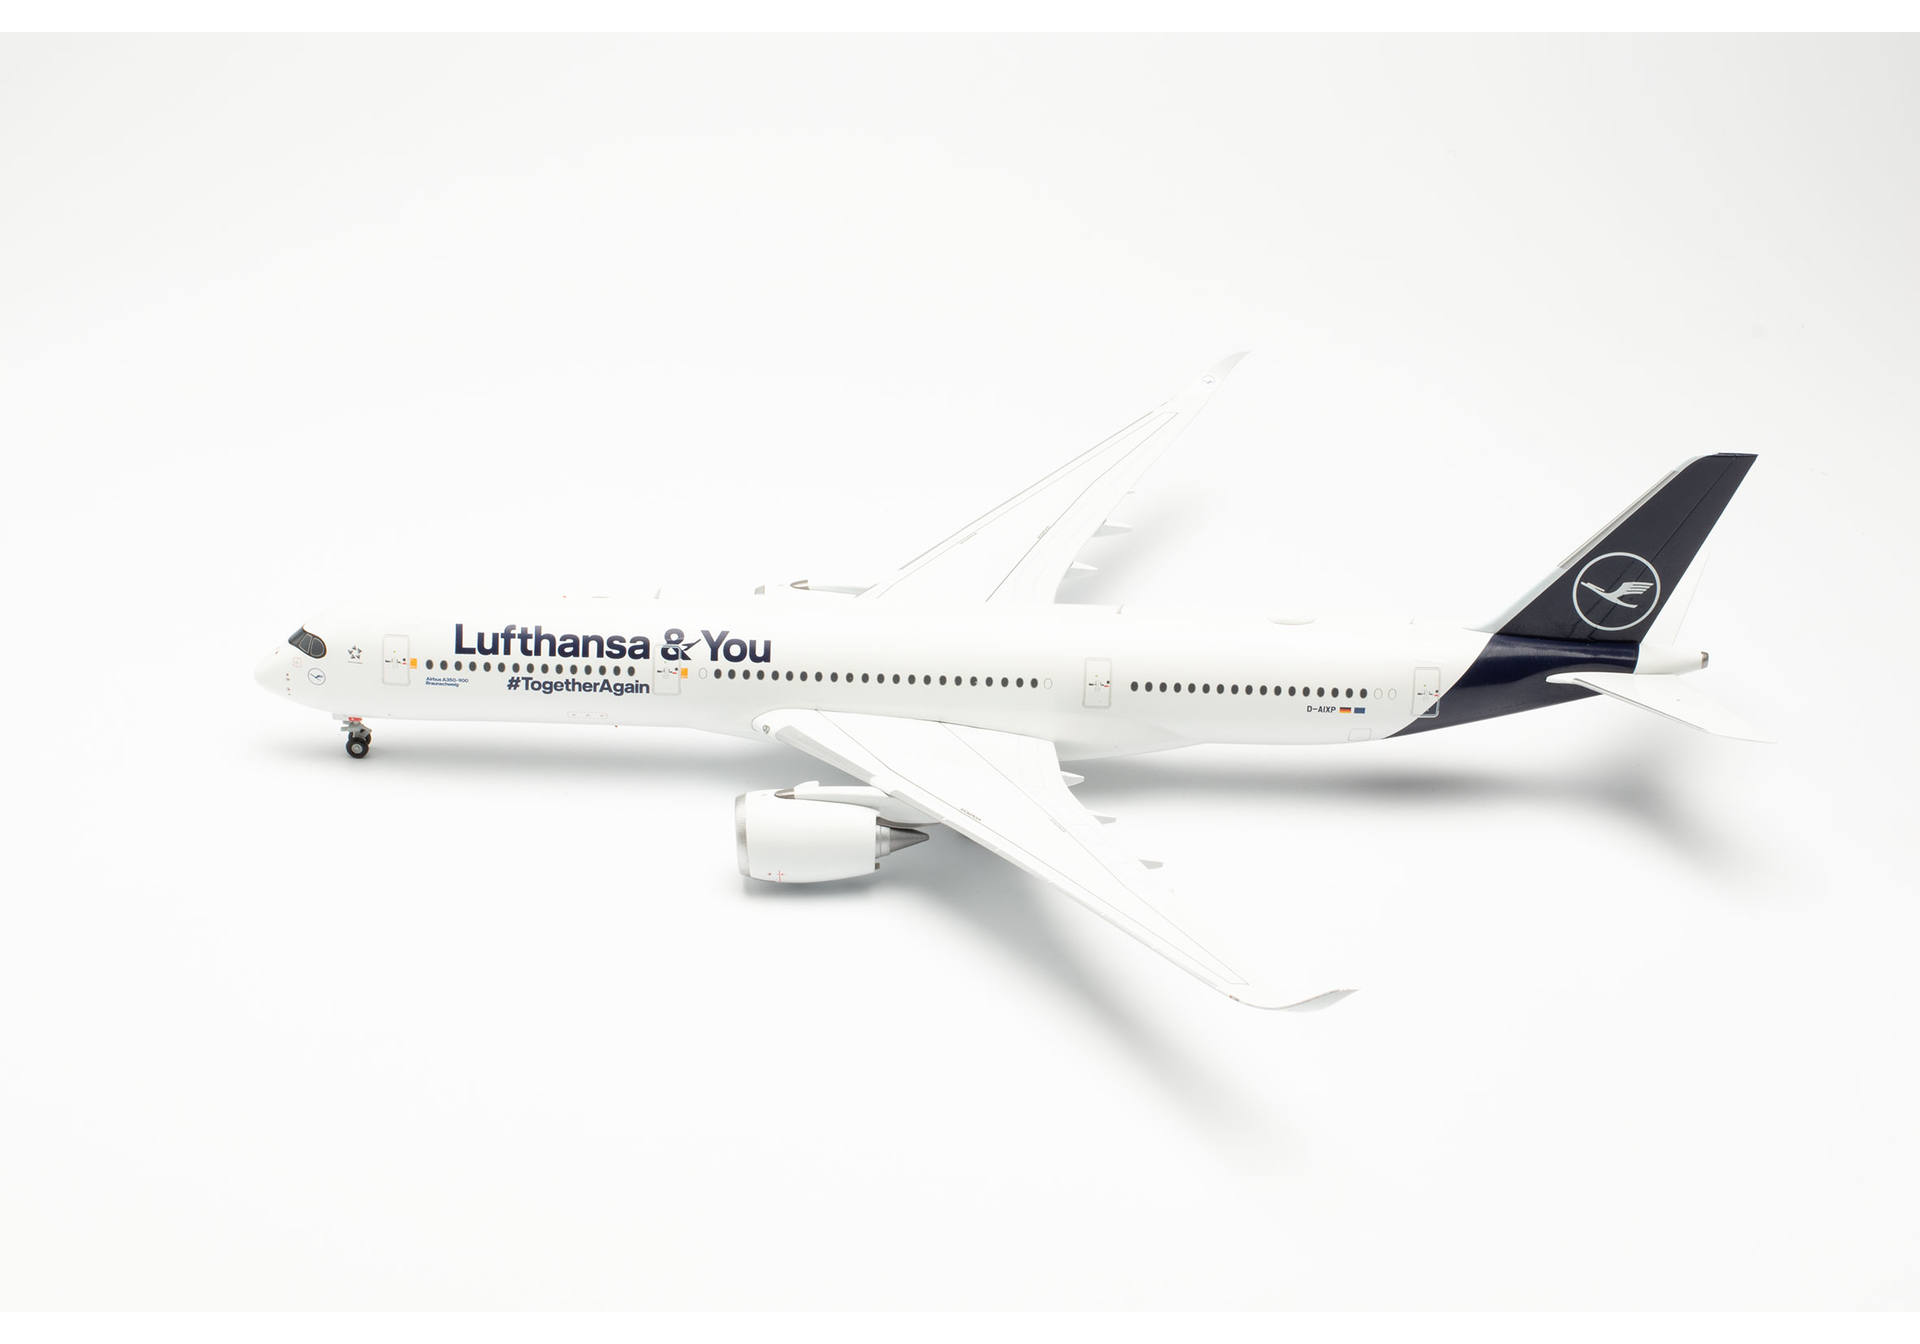 Lufthansa Airbus A350-900 “Lufthansa & You” – D-AIXP “Braunschweig”